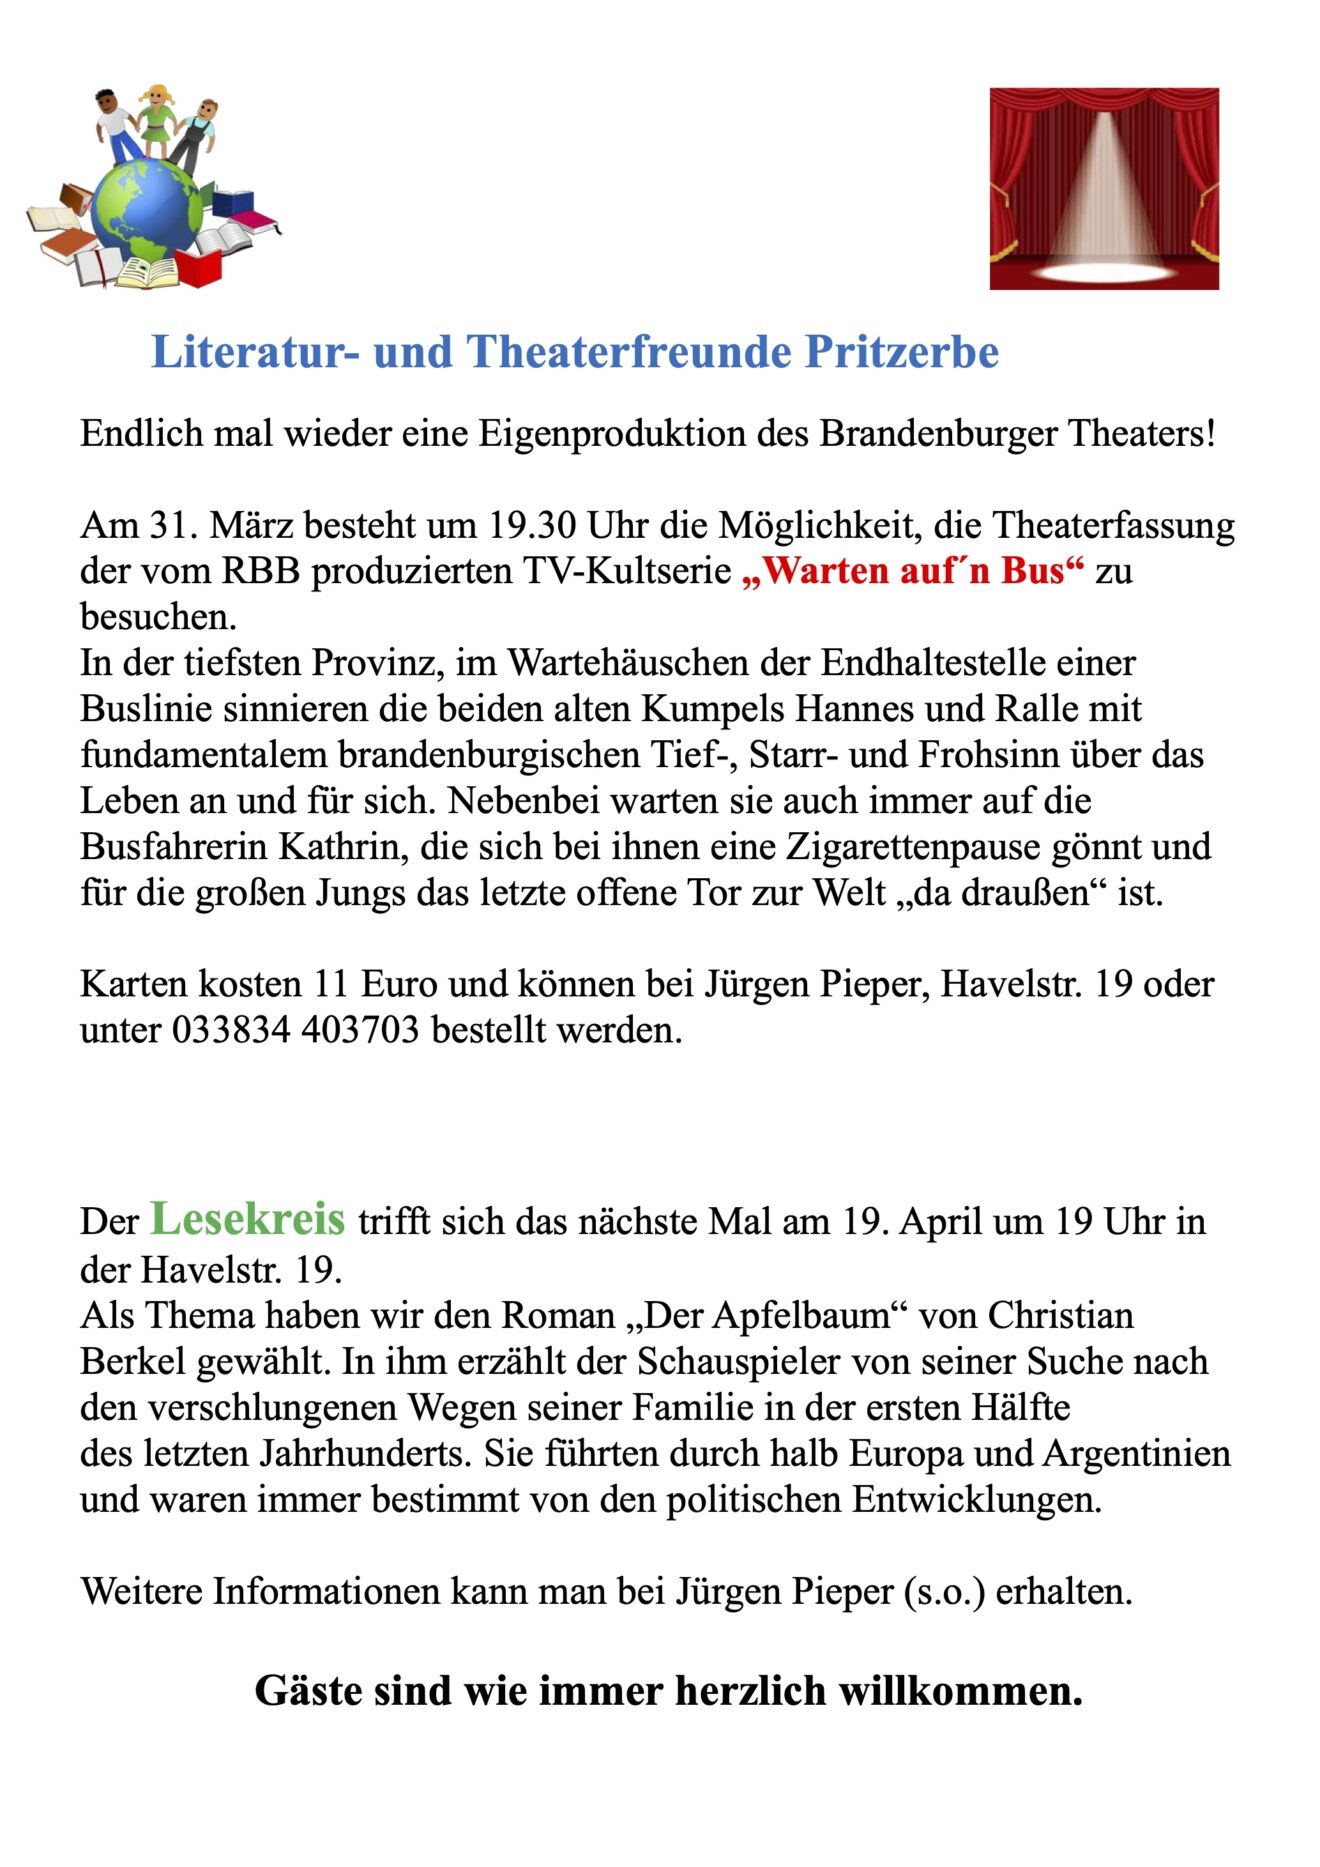 Lesekreis der Literatur- und Theaterfreunde Pritzerbe